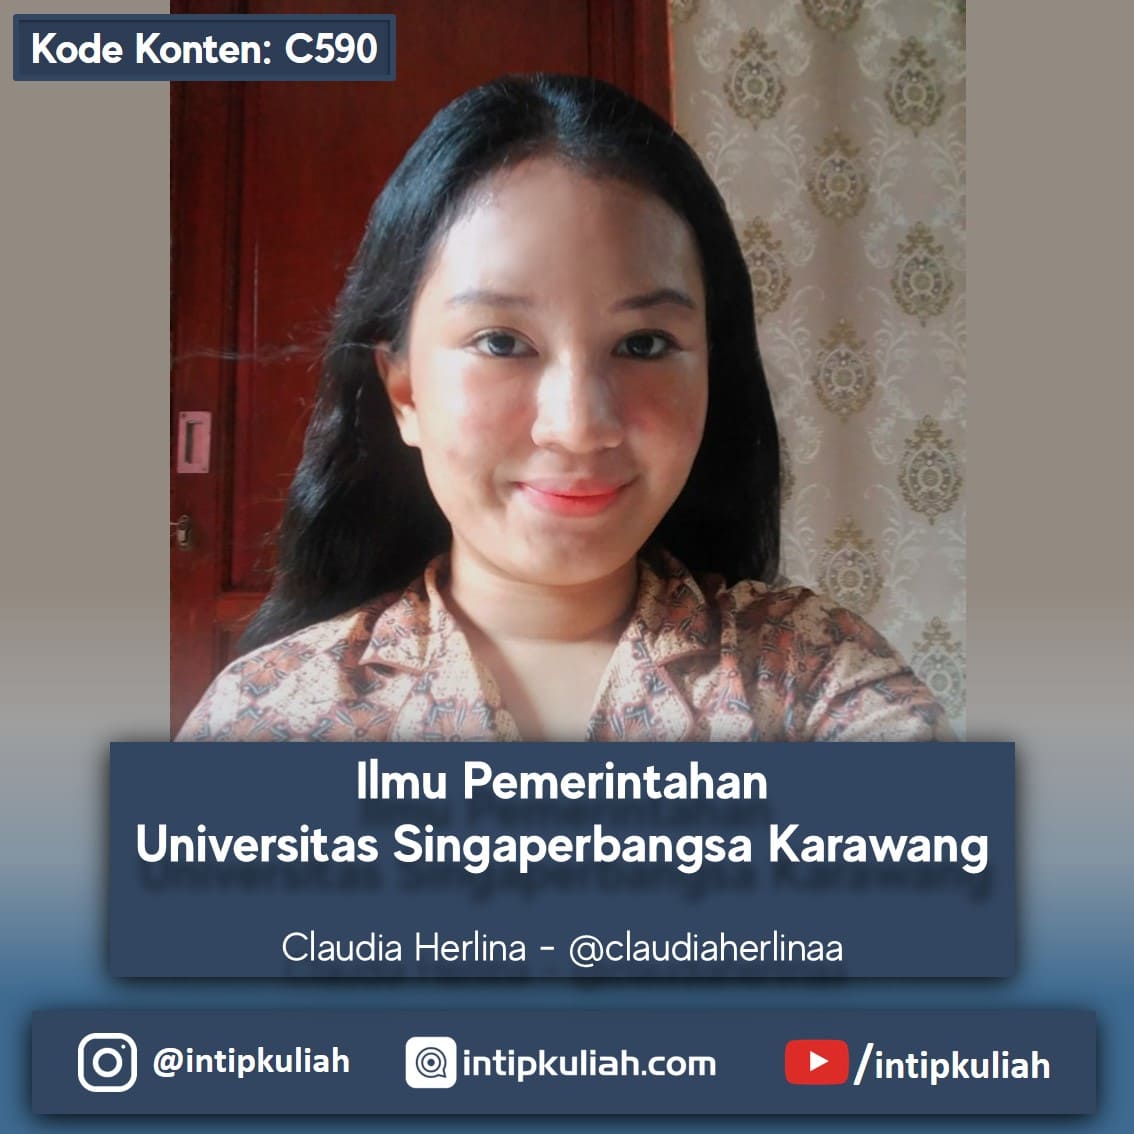 Ilmu Pemerintahan Universitas Singaperbangsa Karawang (Claudia)